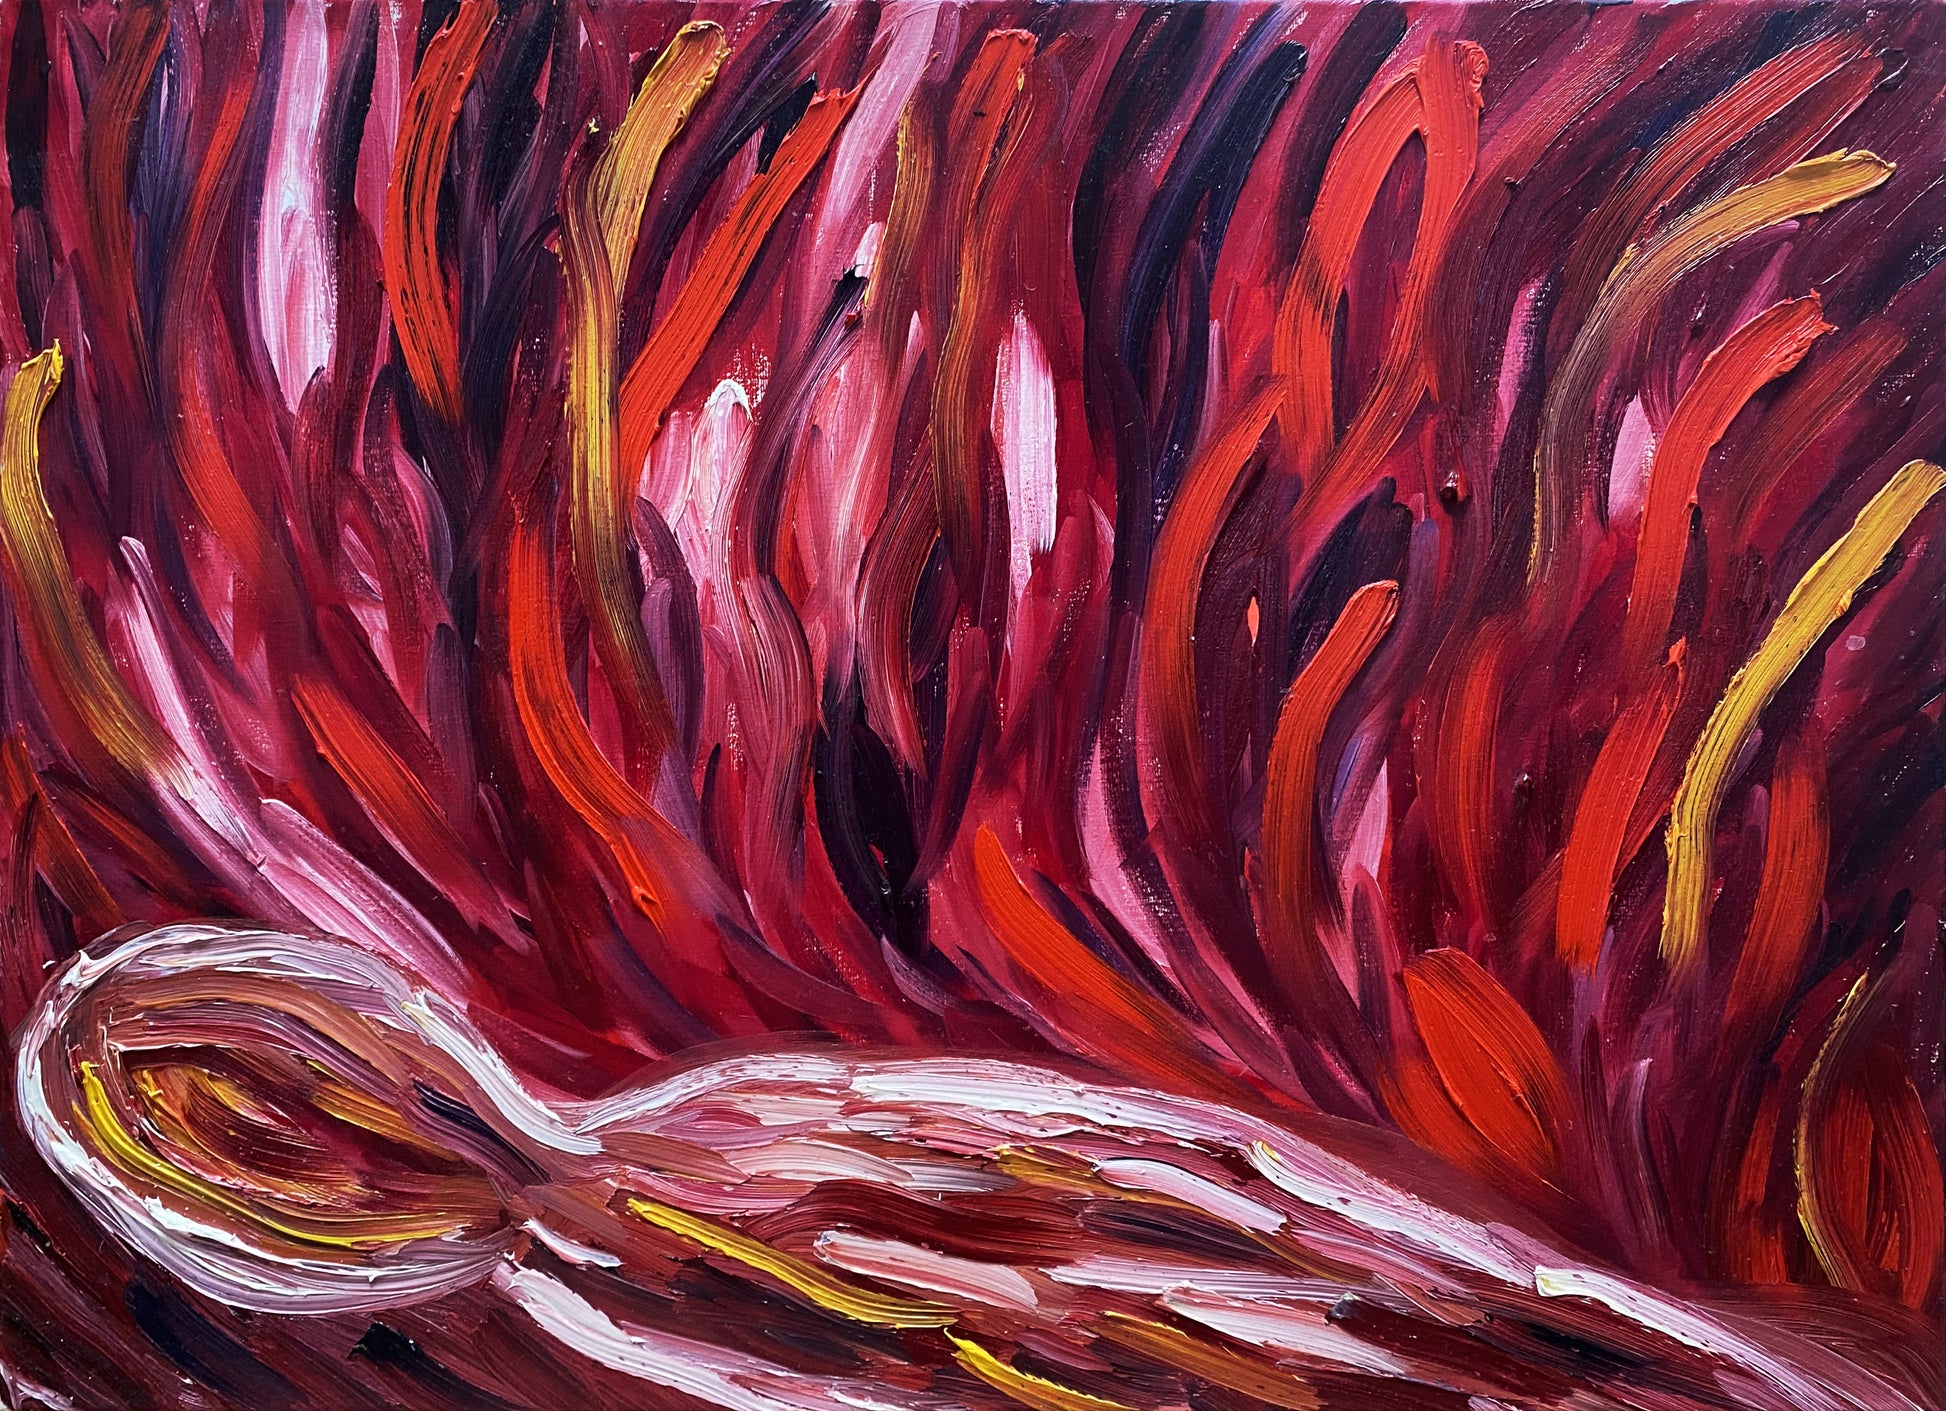 Alessandra Mattanza | FIRE, 19.6 x 27.5 in - Oil on Canvas.